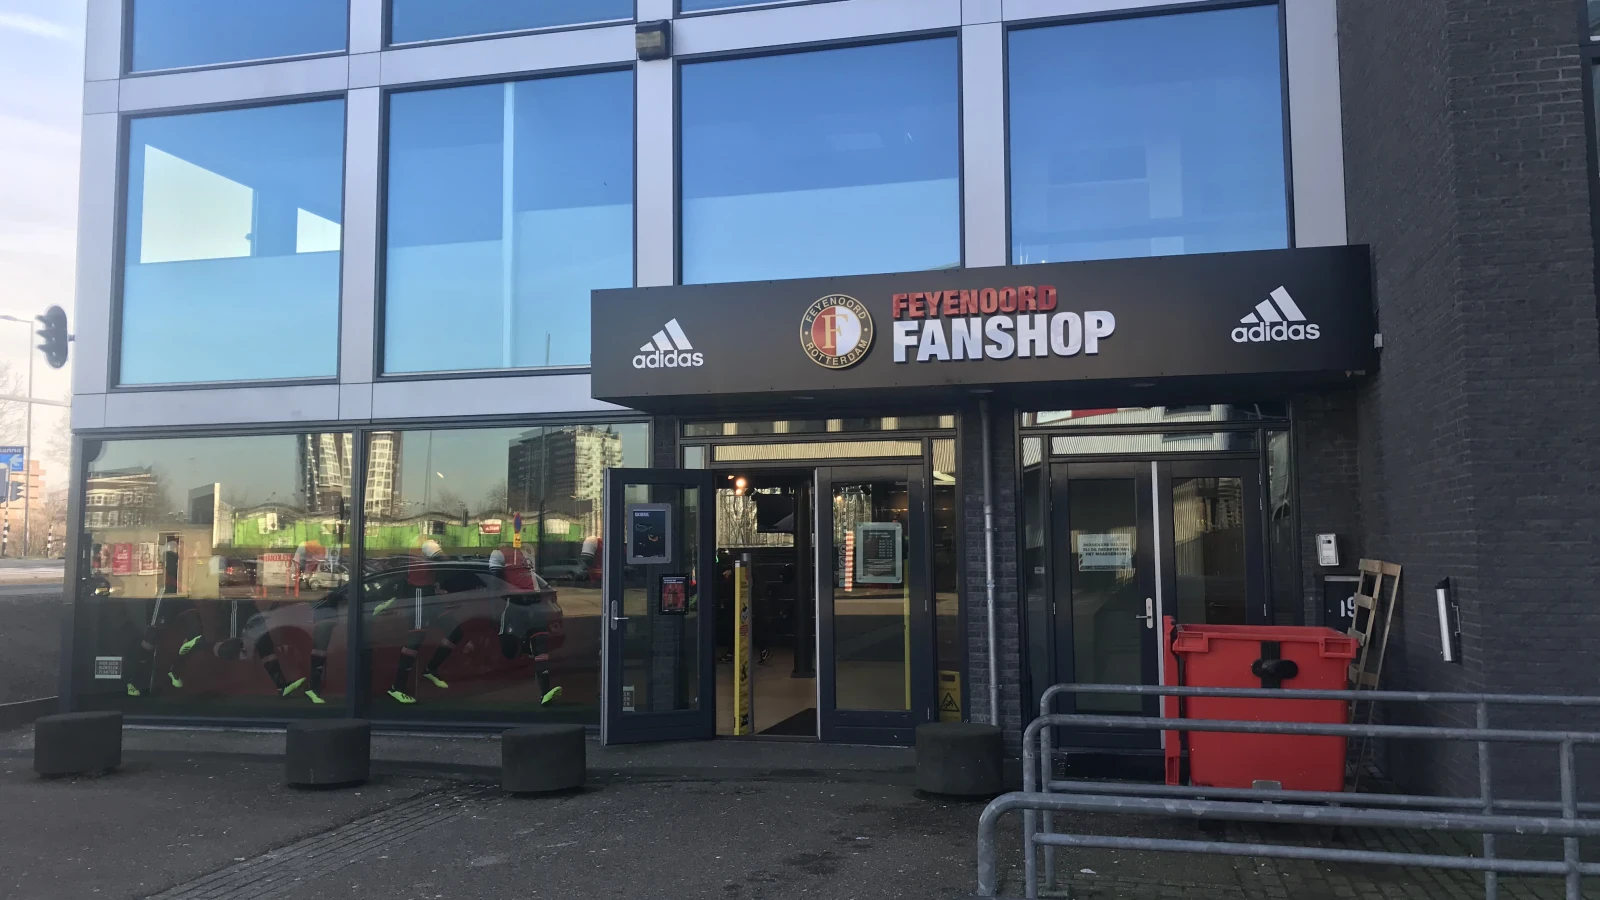 Nog steeds adidas super sale in Feyenoord Fanshop, dus hoge kortingen op bijvoorbeeld het thuisshirt!